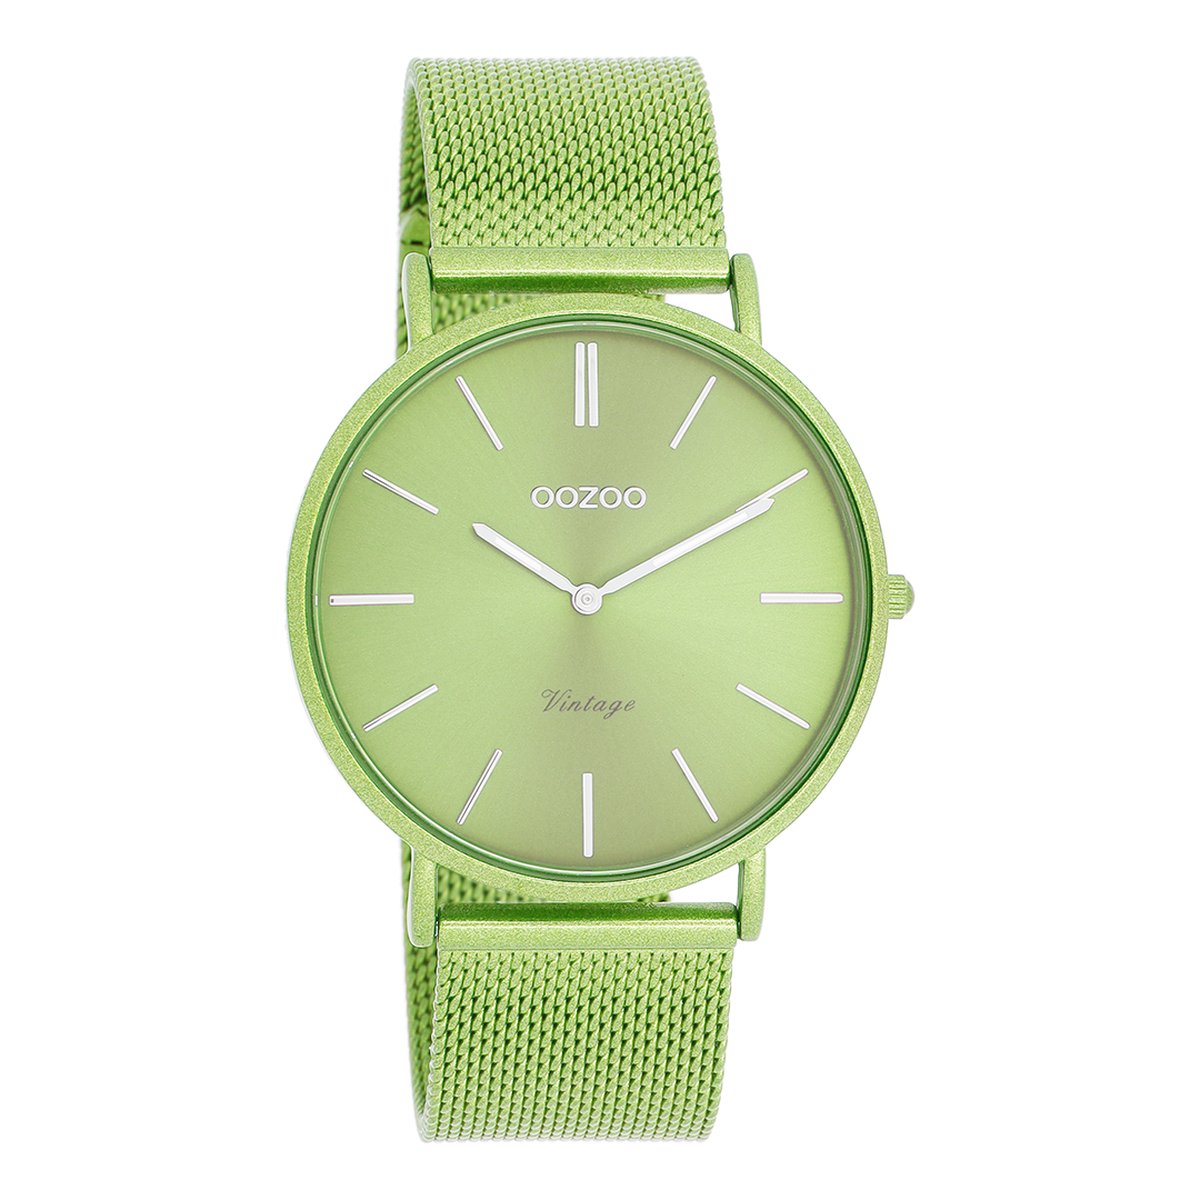 OOZOO Vintage series - Limoen groene OOZOO horloge met limoen groene metalen mesh armband - C20330